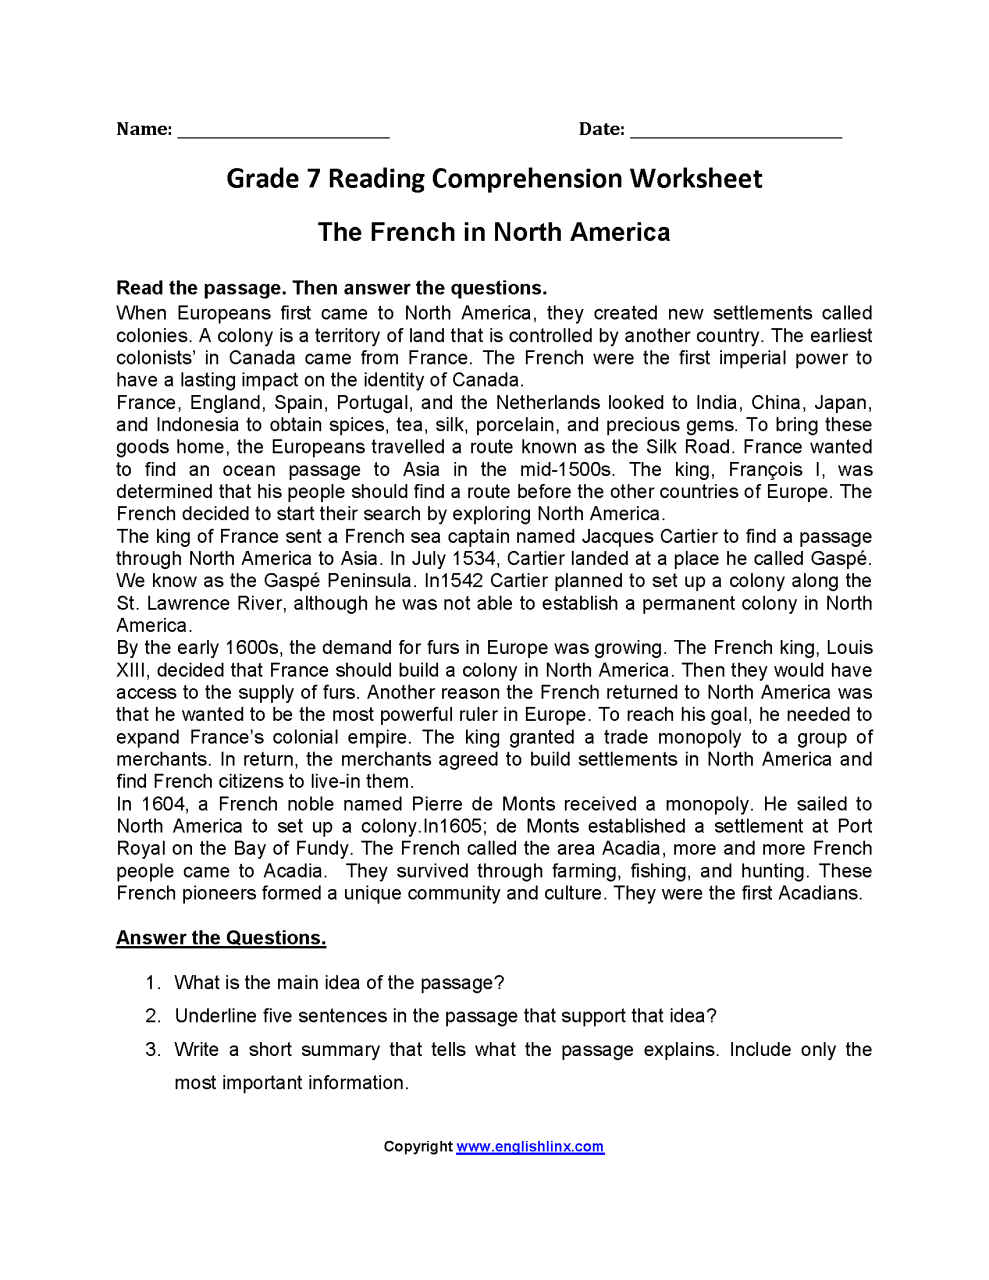 Grade 7 Reading Comprehension Worksheets Pdf amulette